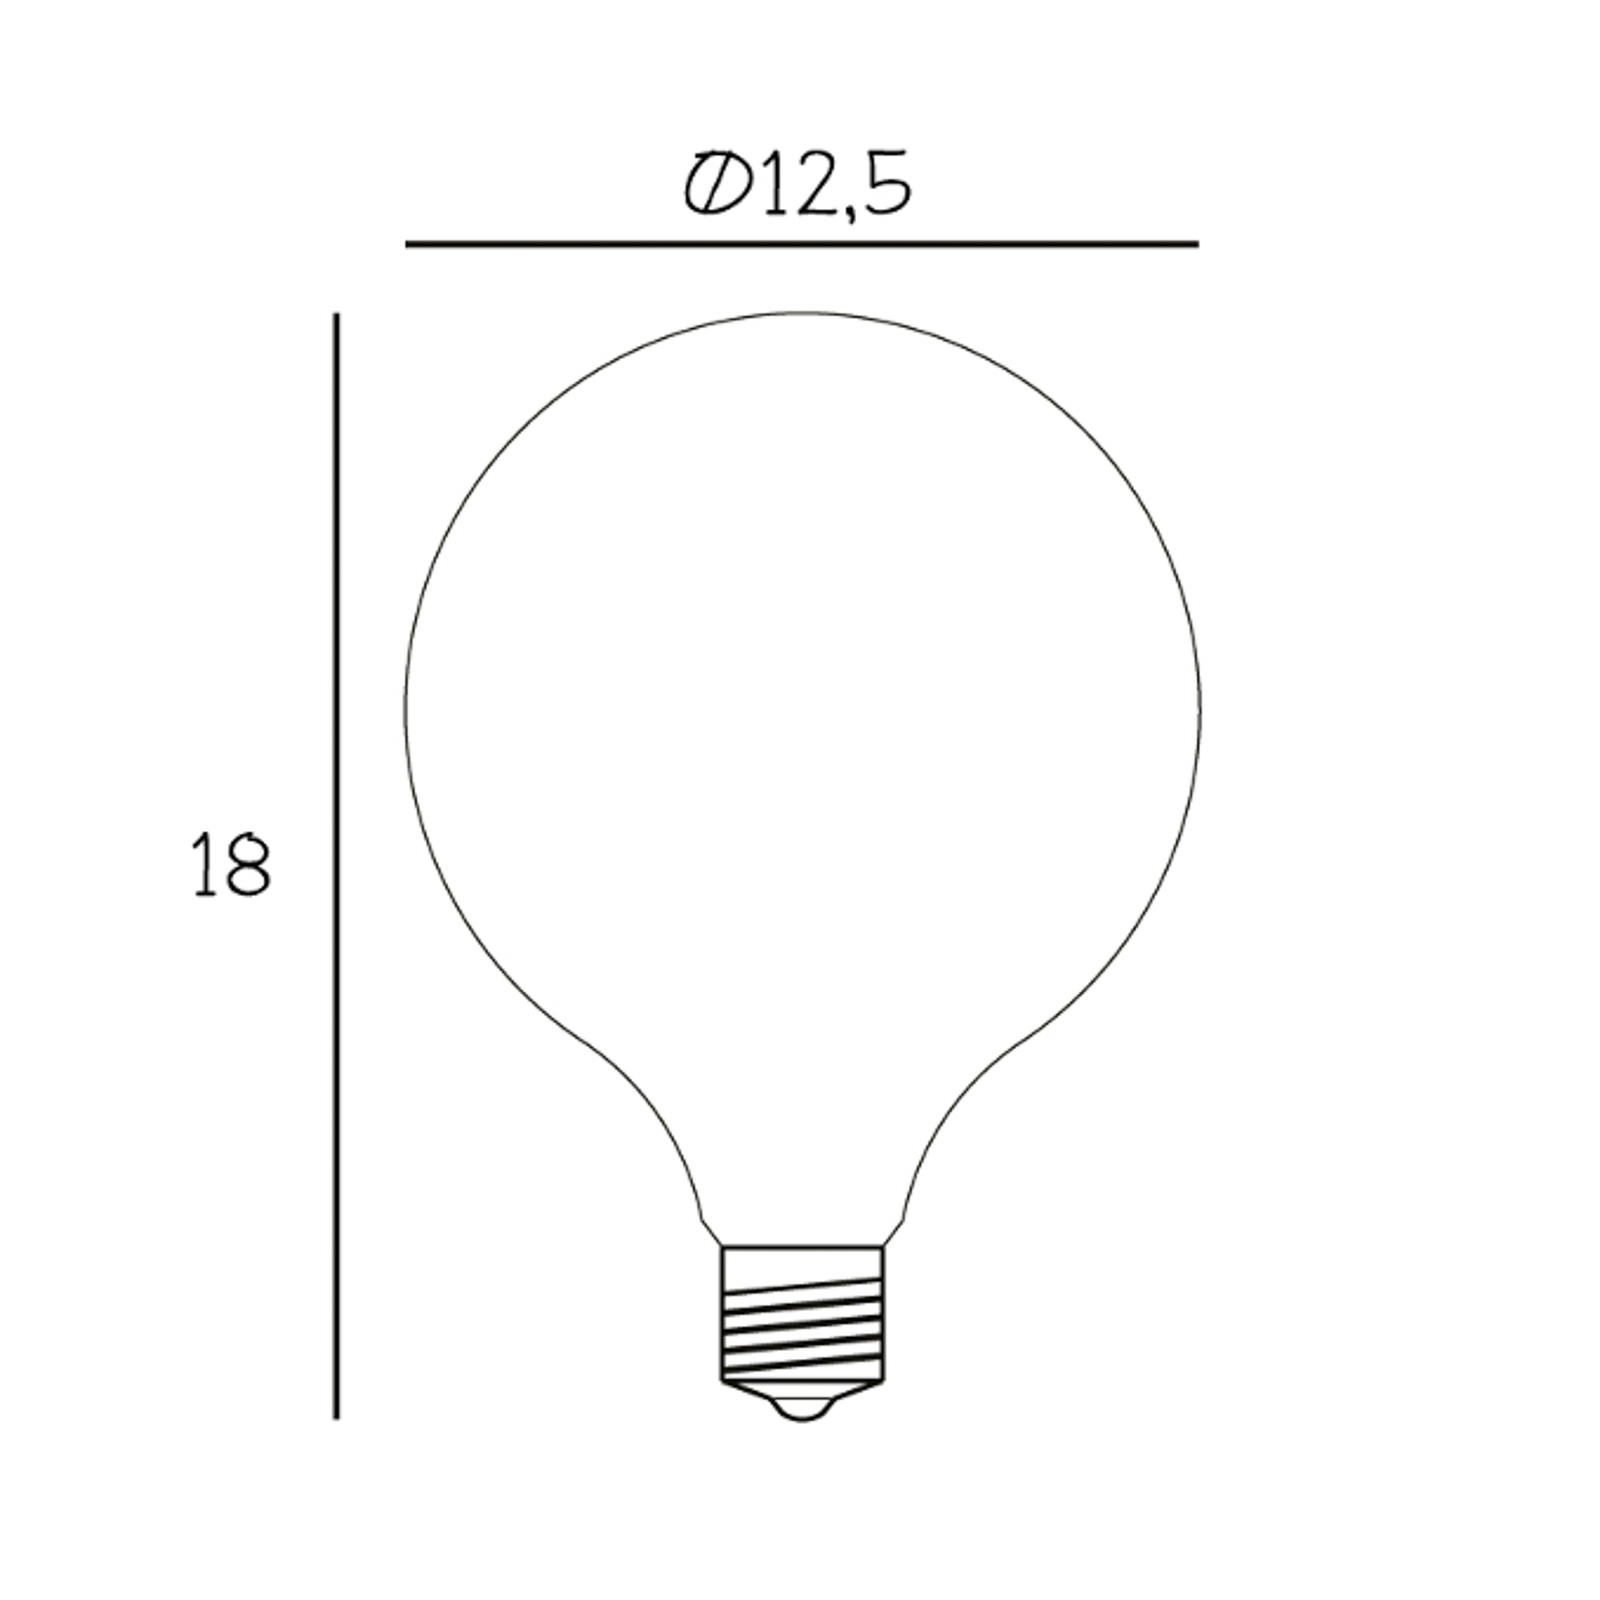 LED žárovka Globe, E27, Ø 12,5 cm, matná, 5 W, 2 200 K